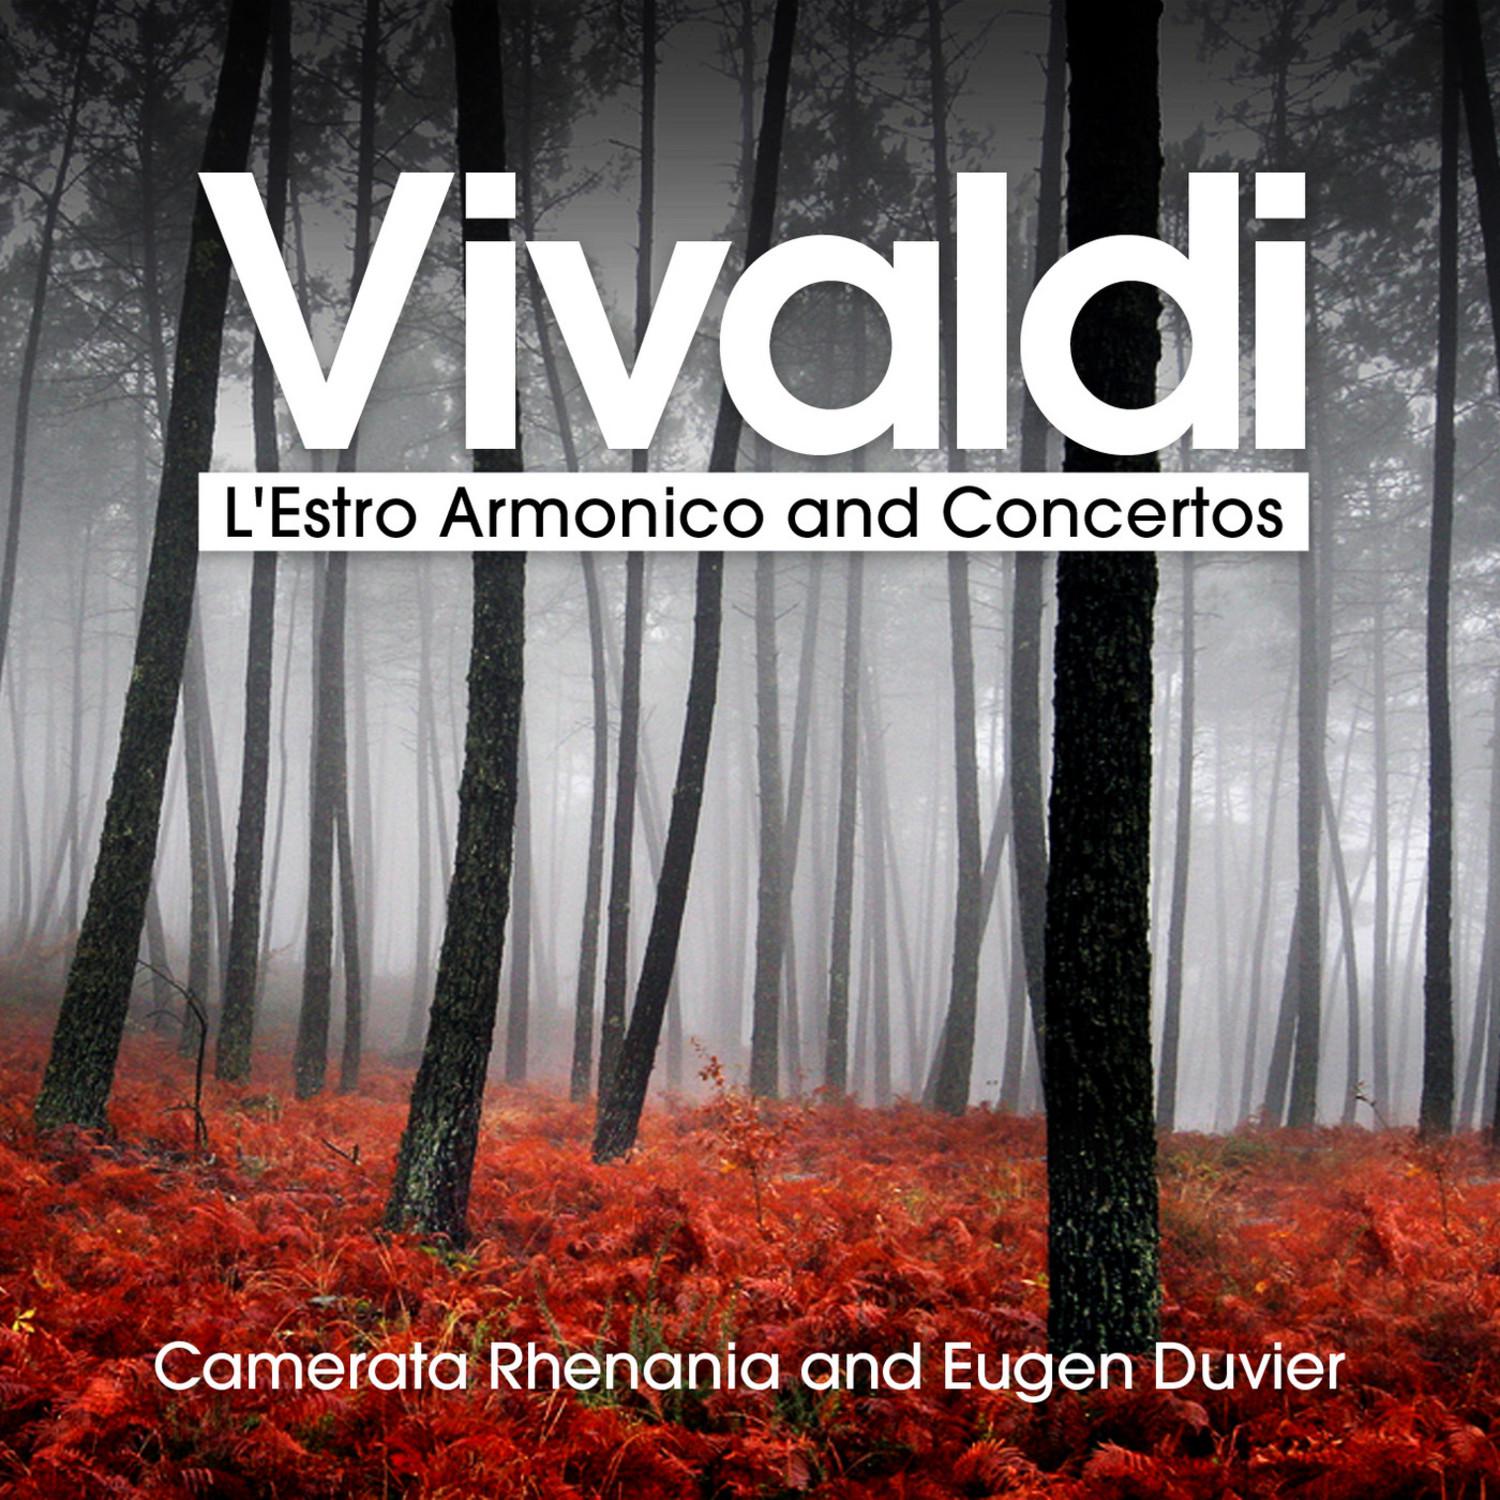 Concerto No. 2 in G Minor for Flute and Strings, RV 439, "La notte", Op. 10: VI. Il Sonno: Largo